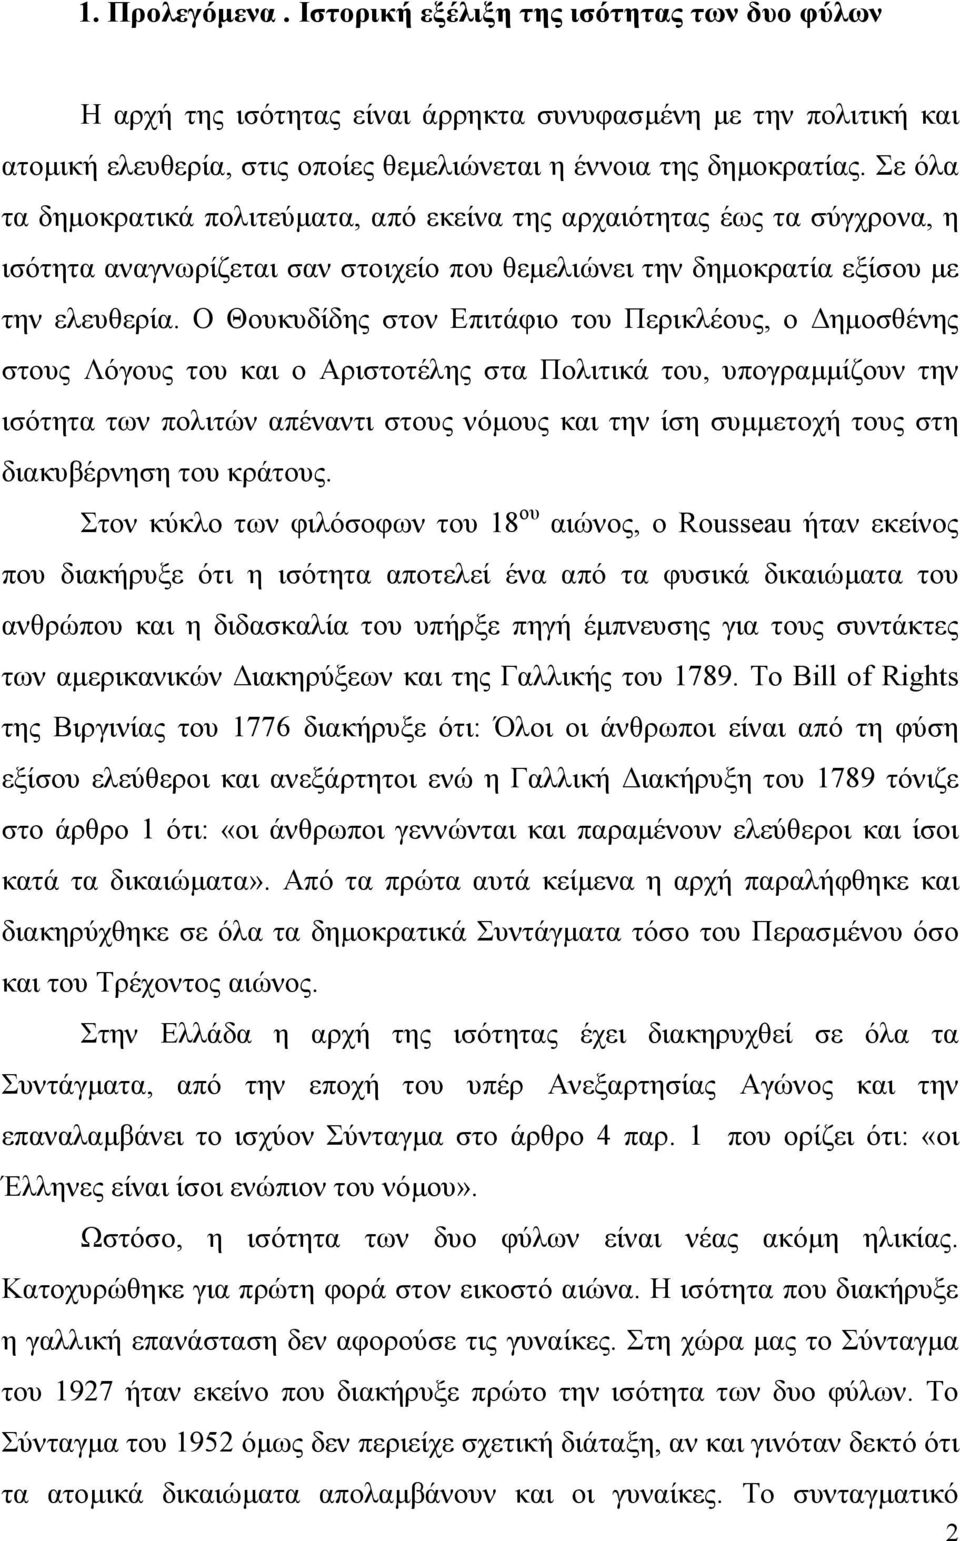 Ο Θουκυδίδης στον Επιτάφιο του Περικλέους, ο ηµοσθένης στους Λόγους του και ο Αριστοτέλης στα Πολιτικά του, υπογραµµίζουν την ισότητα των πολιτών απέναντι στους νόµους και την ίση συµµετοχή τους στη